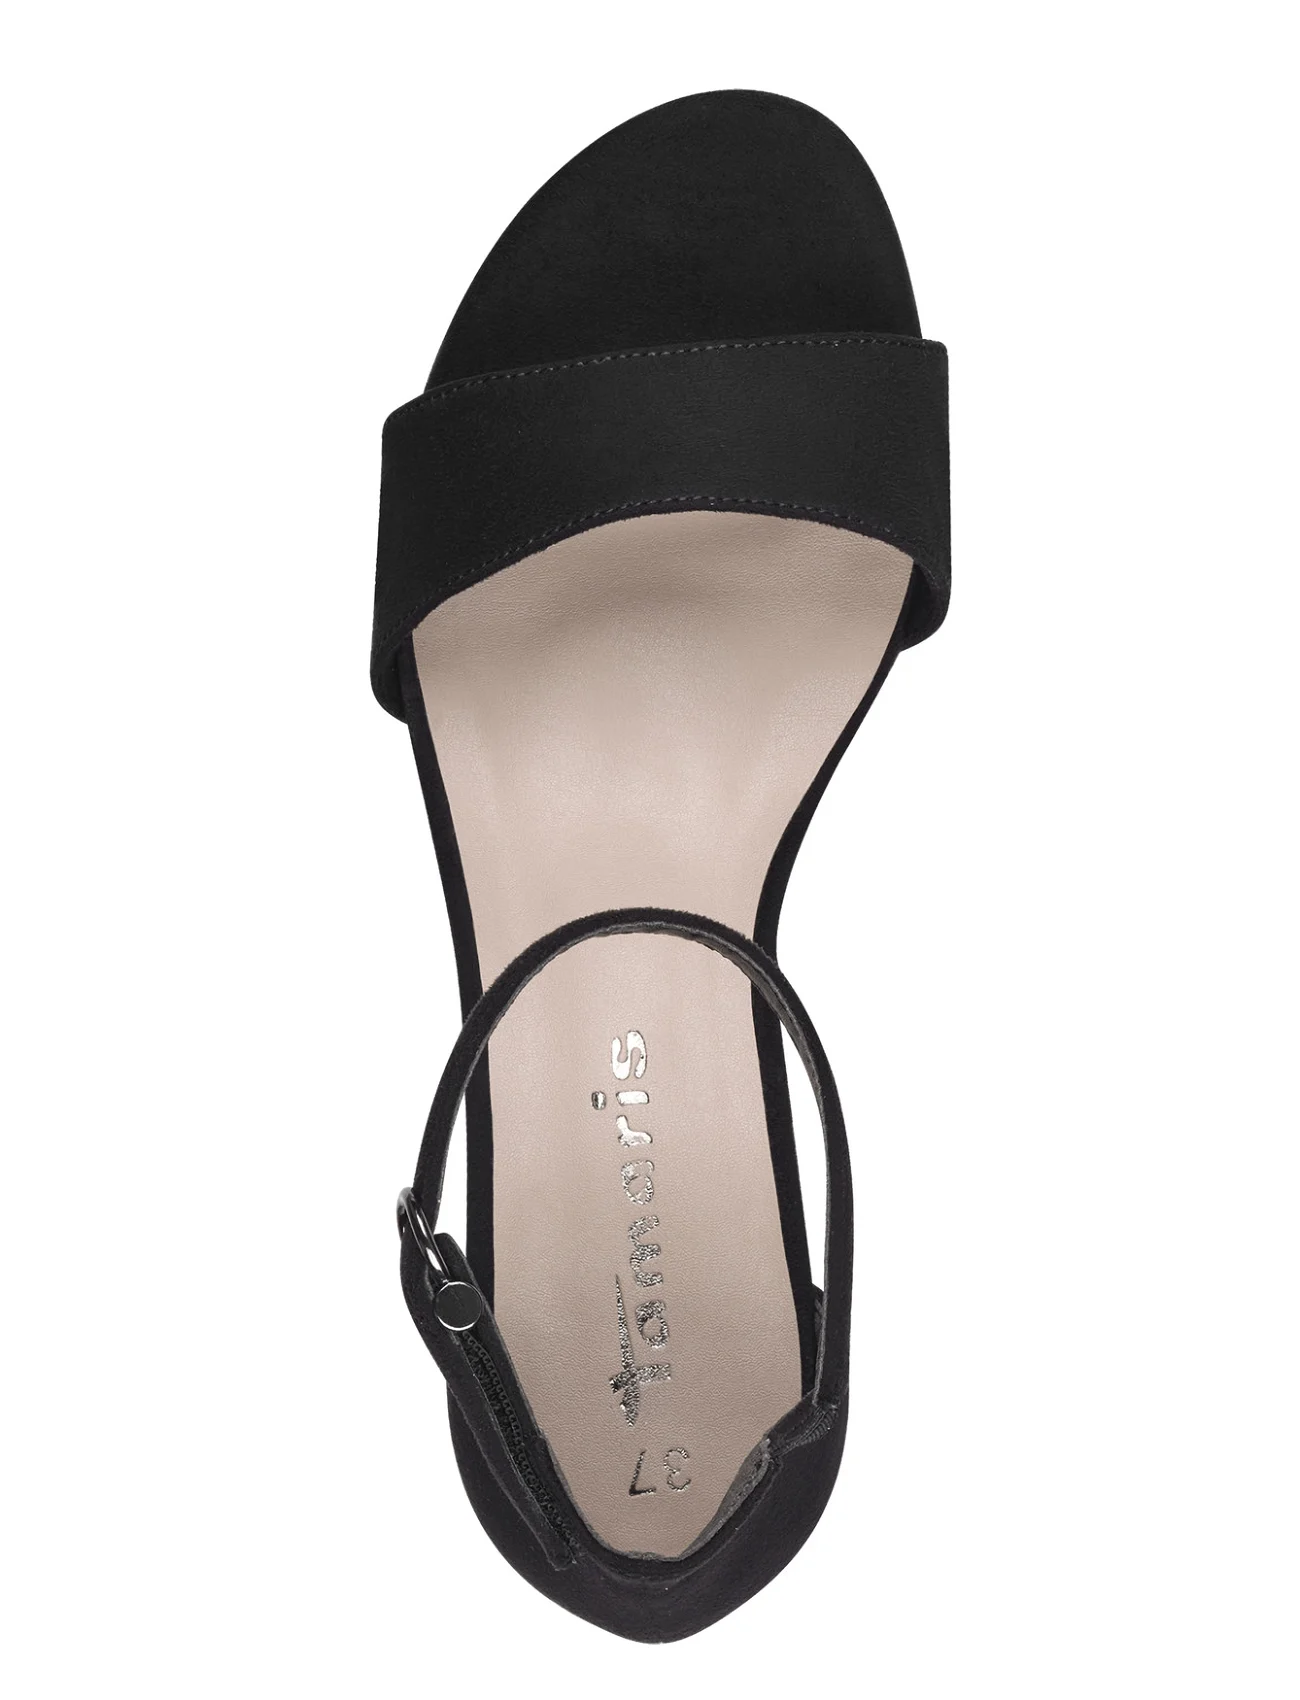 Tamaris - Women Sandals - festmode zu outlet-preisen - black - 1